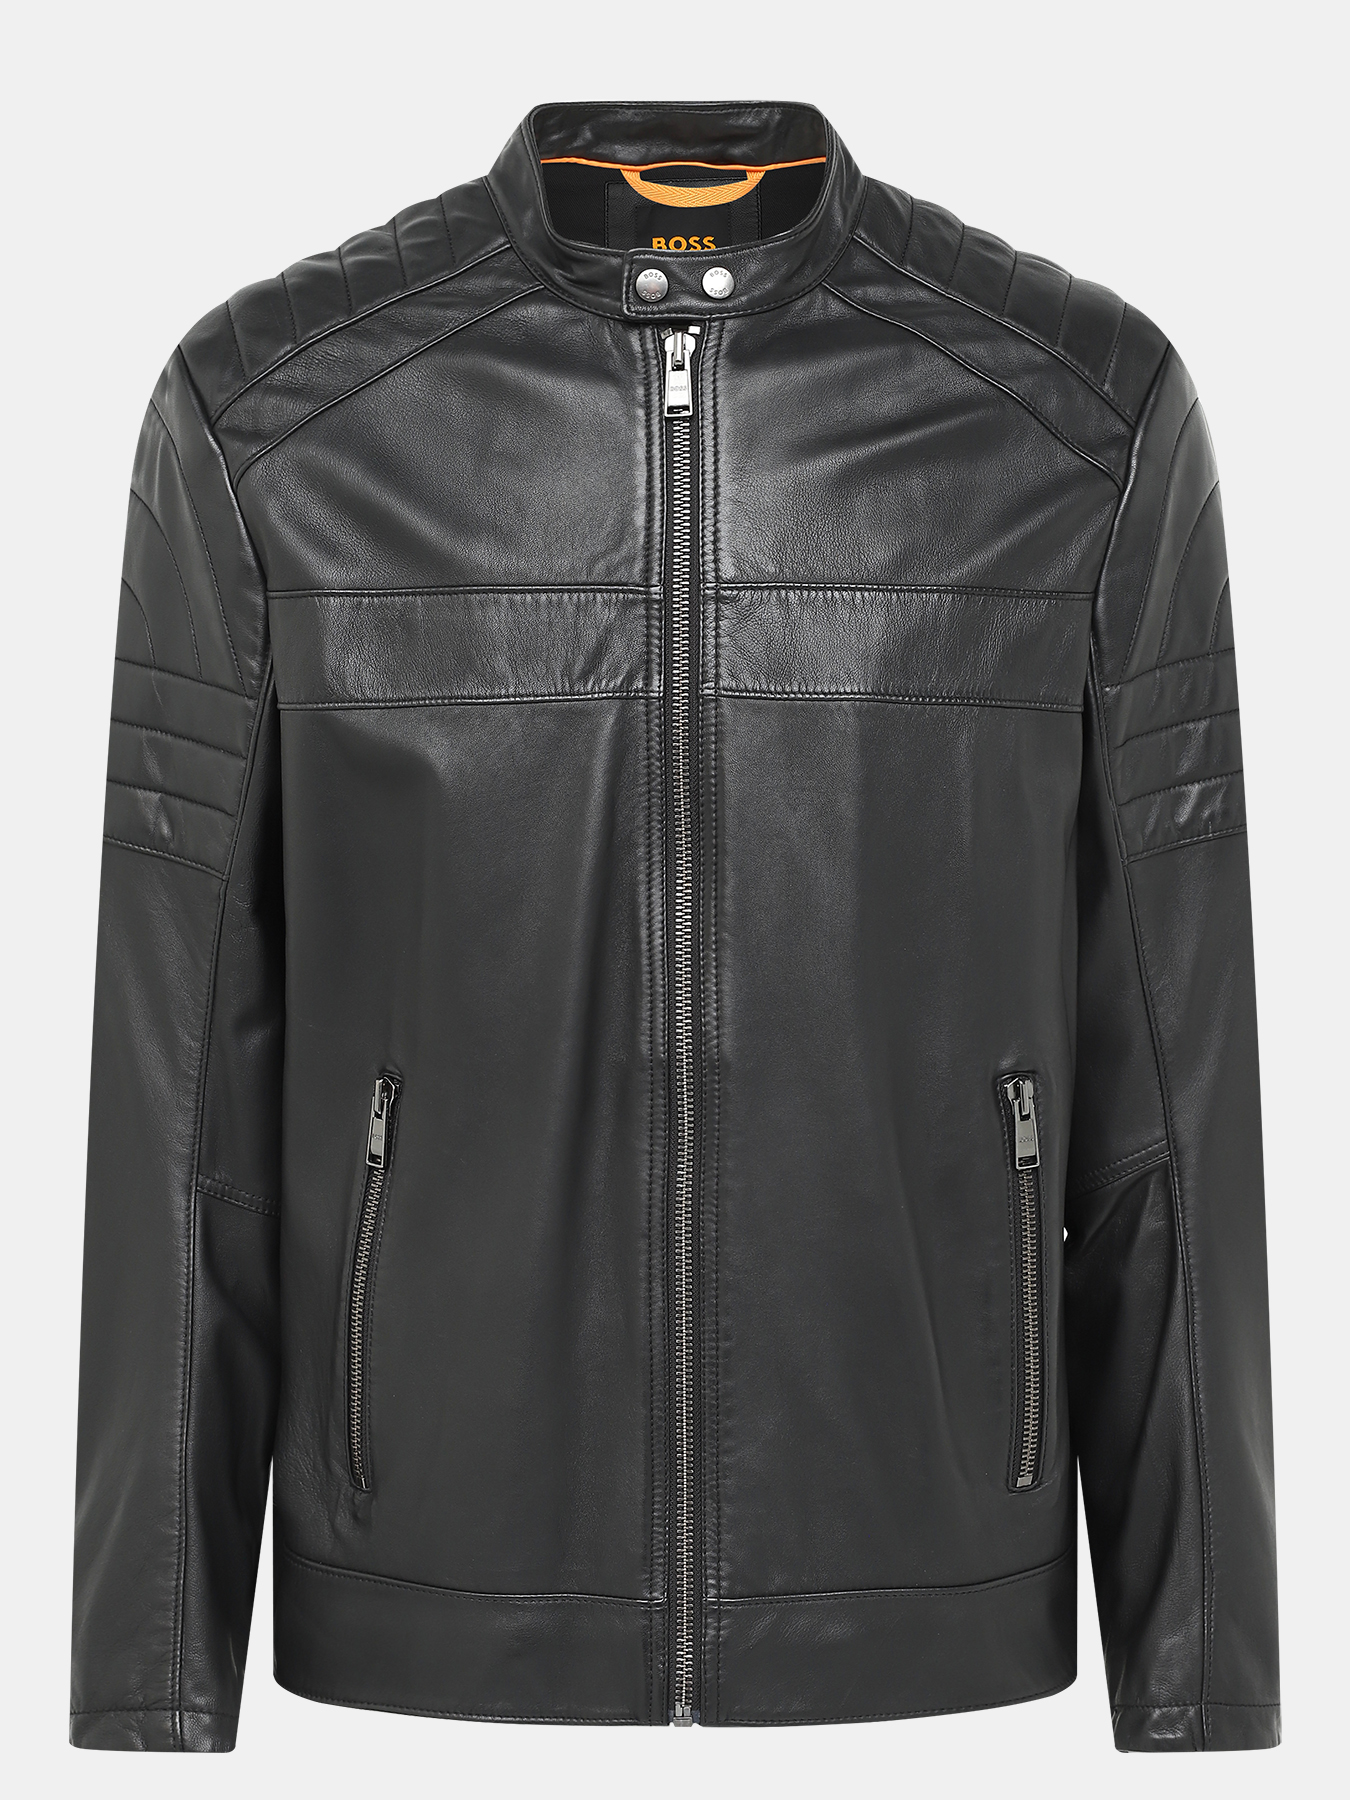 Кожаная куртка Junow BOSS 414125-030, цвет черный, размер 58